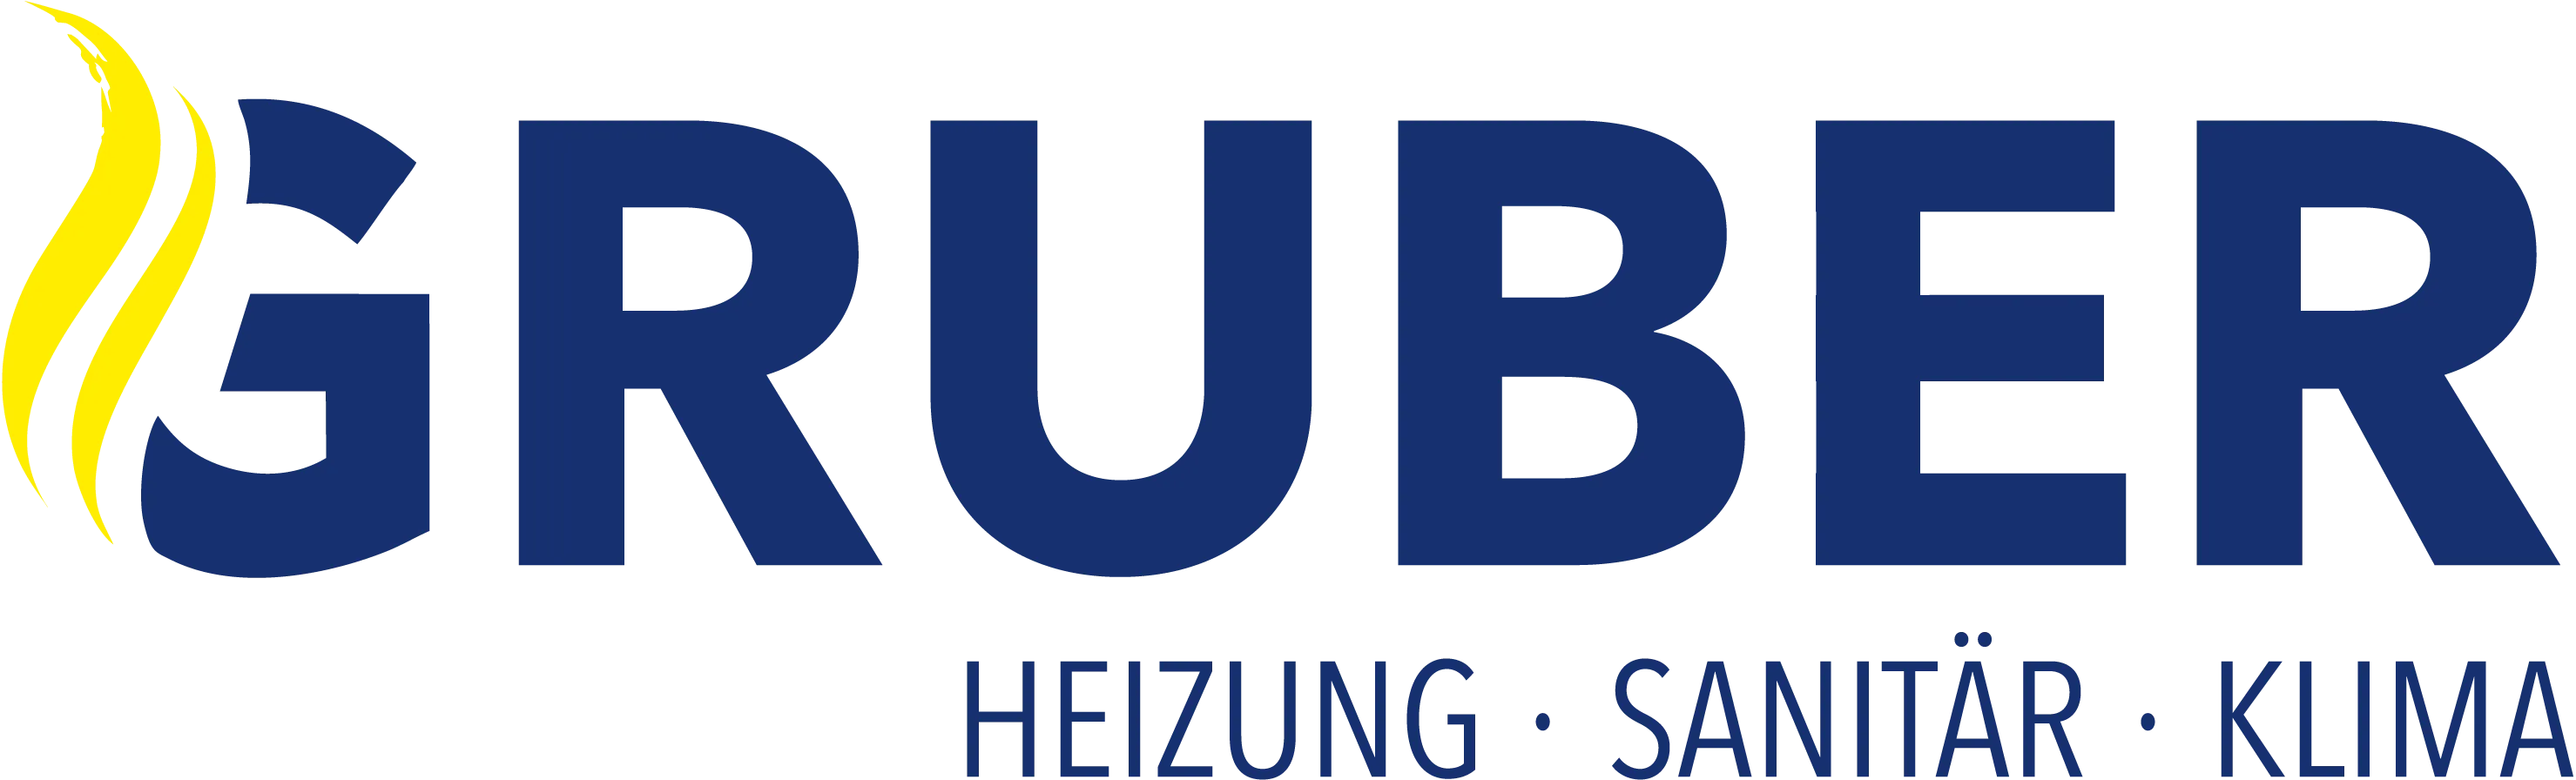 Gruber Logo.png